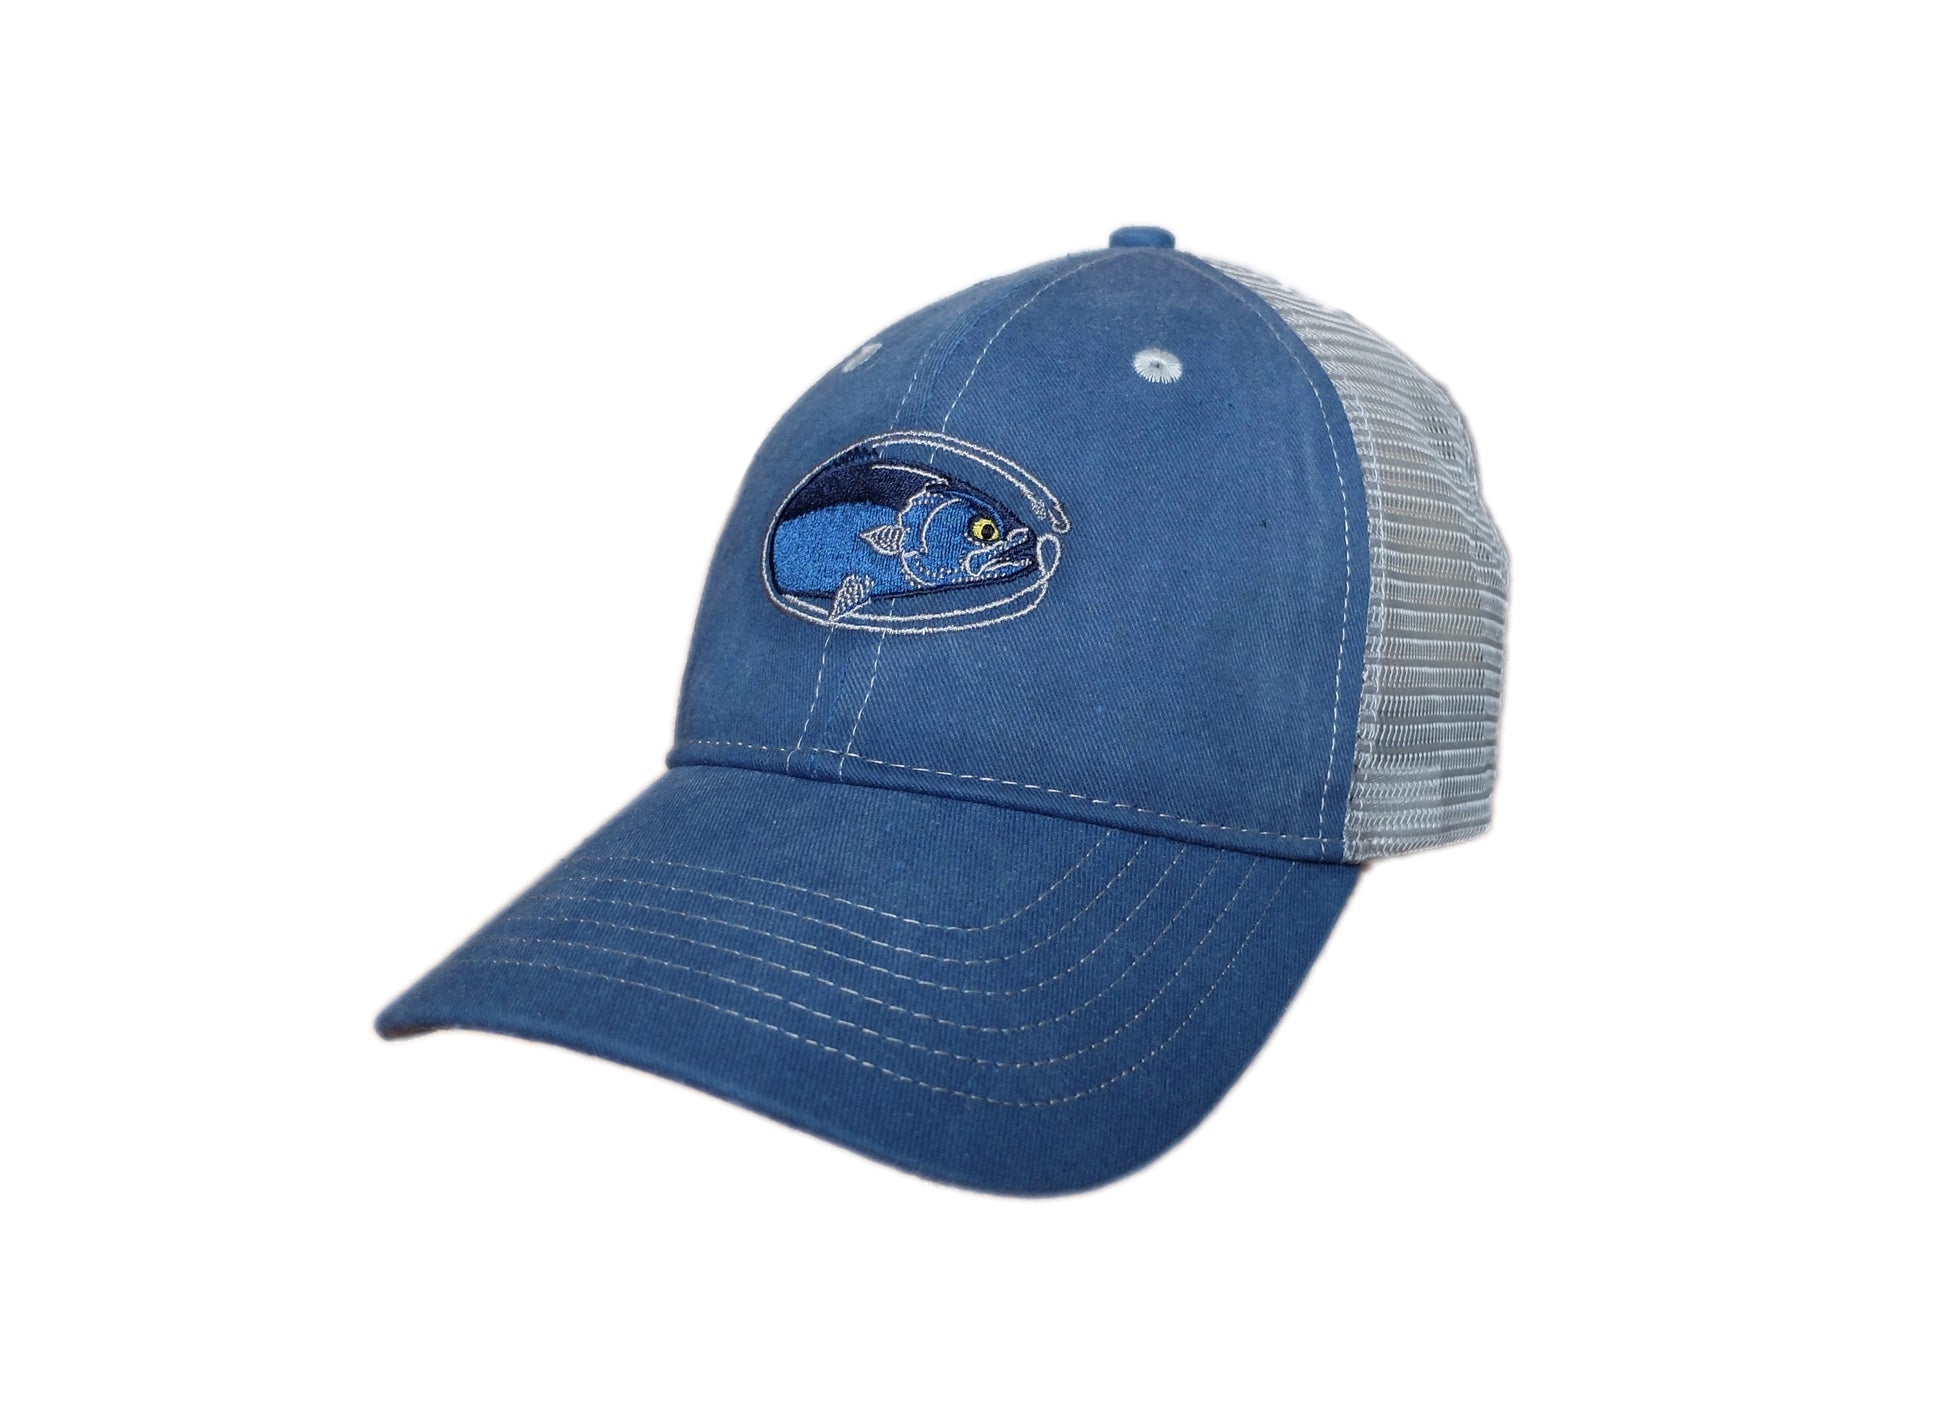 https://www.deepthoughtsdesigns.com/cdn/shop/products/bluefish_trucker_hat.jpg?v=1704564552&width=1946